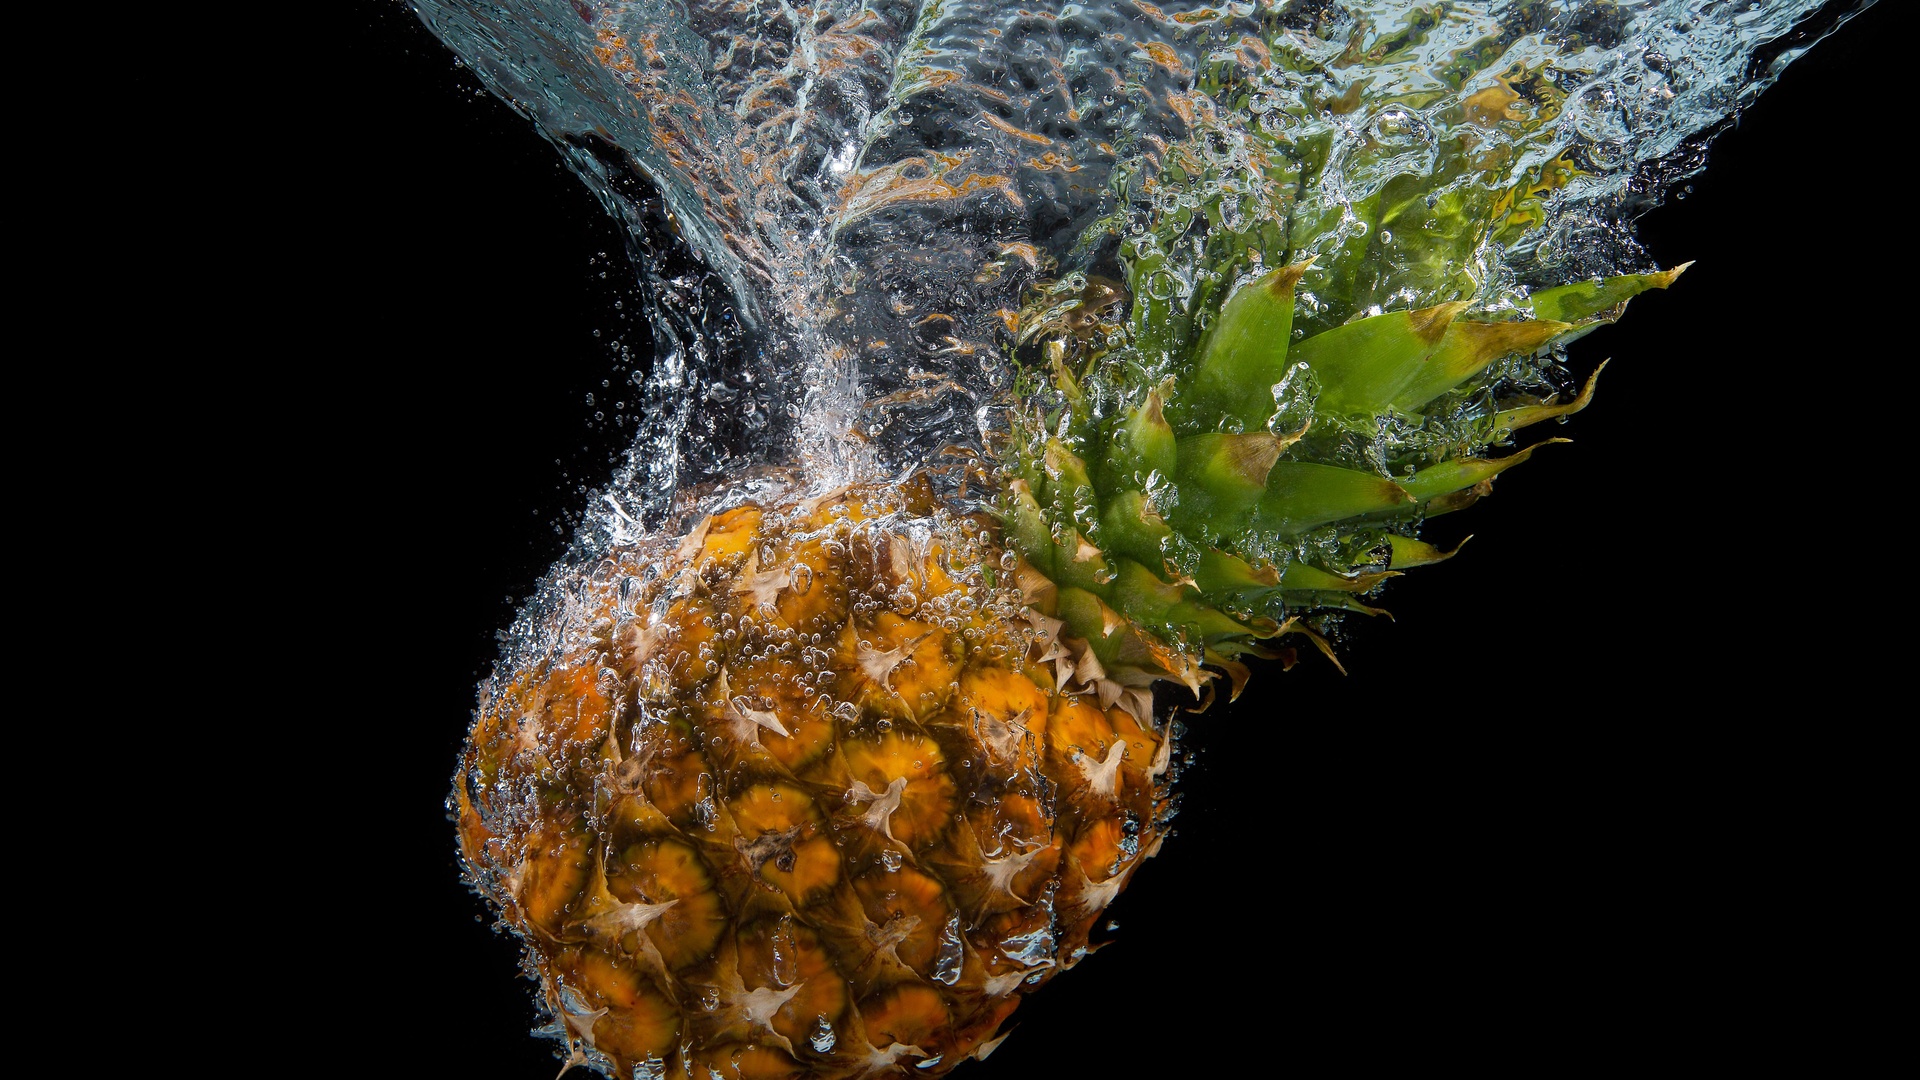 菠萝水飞溅 库存照片. 图片 包括有 水色, 流体, 菠萝, 飞溅, 泼溅物, 下落, 新鲜, 液体, 原始 - 133981938